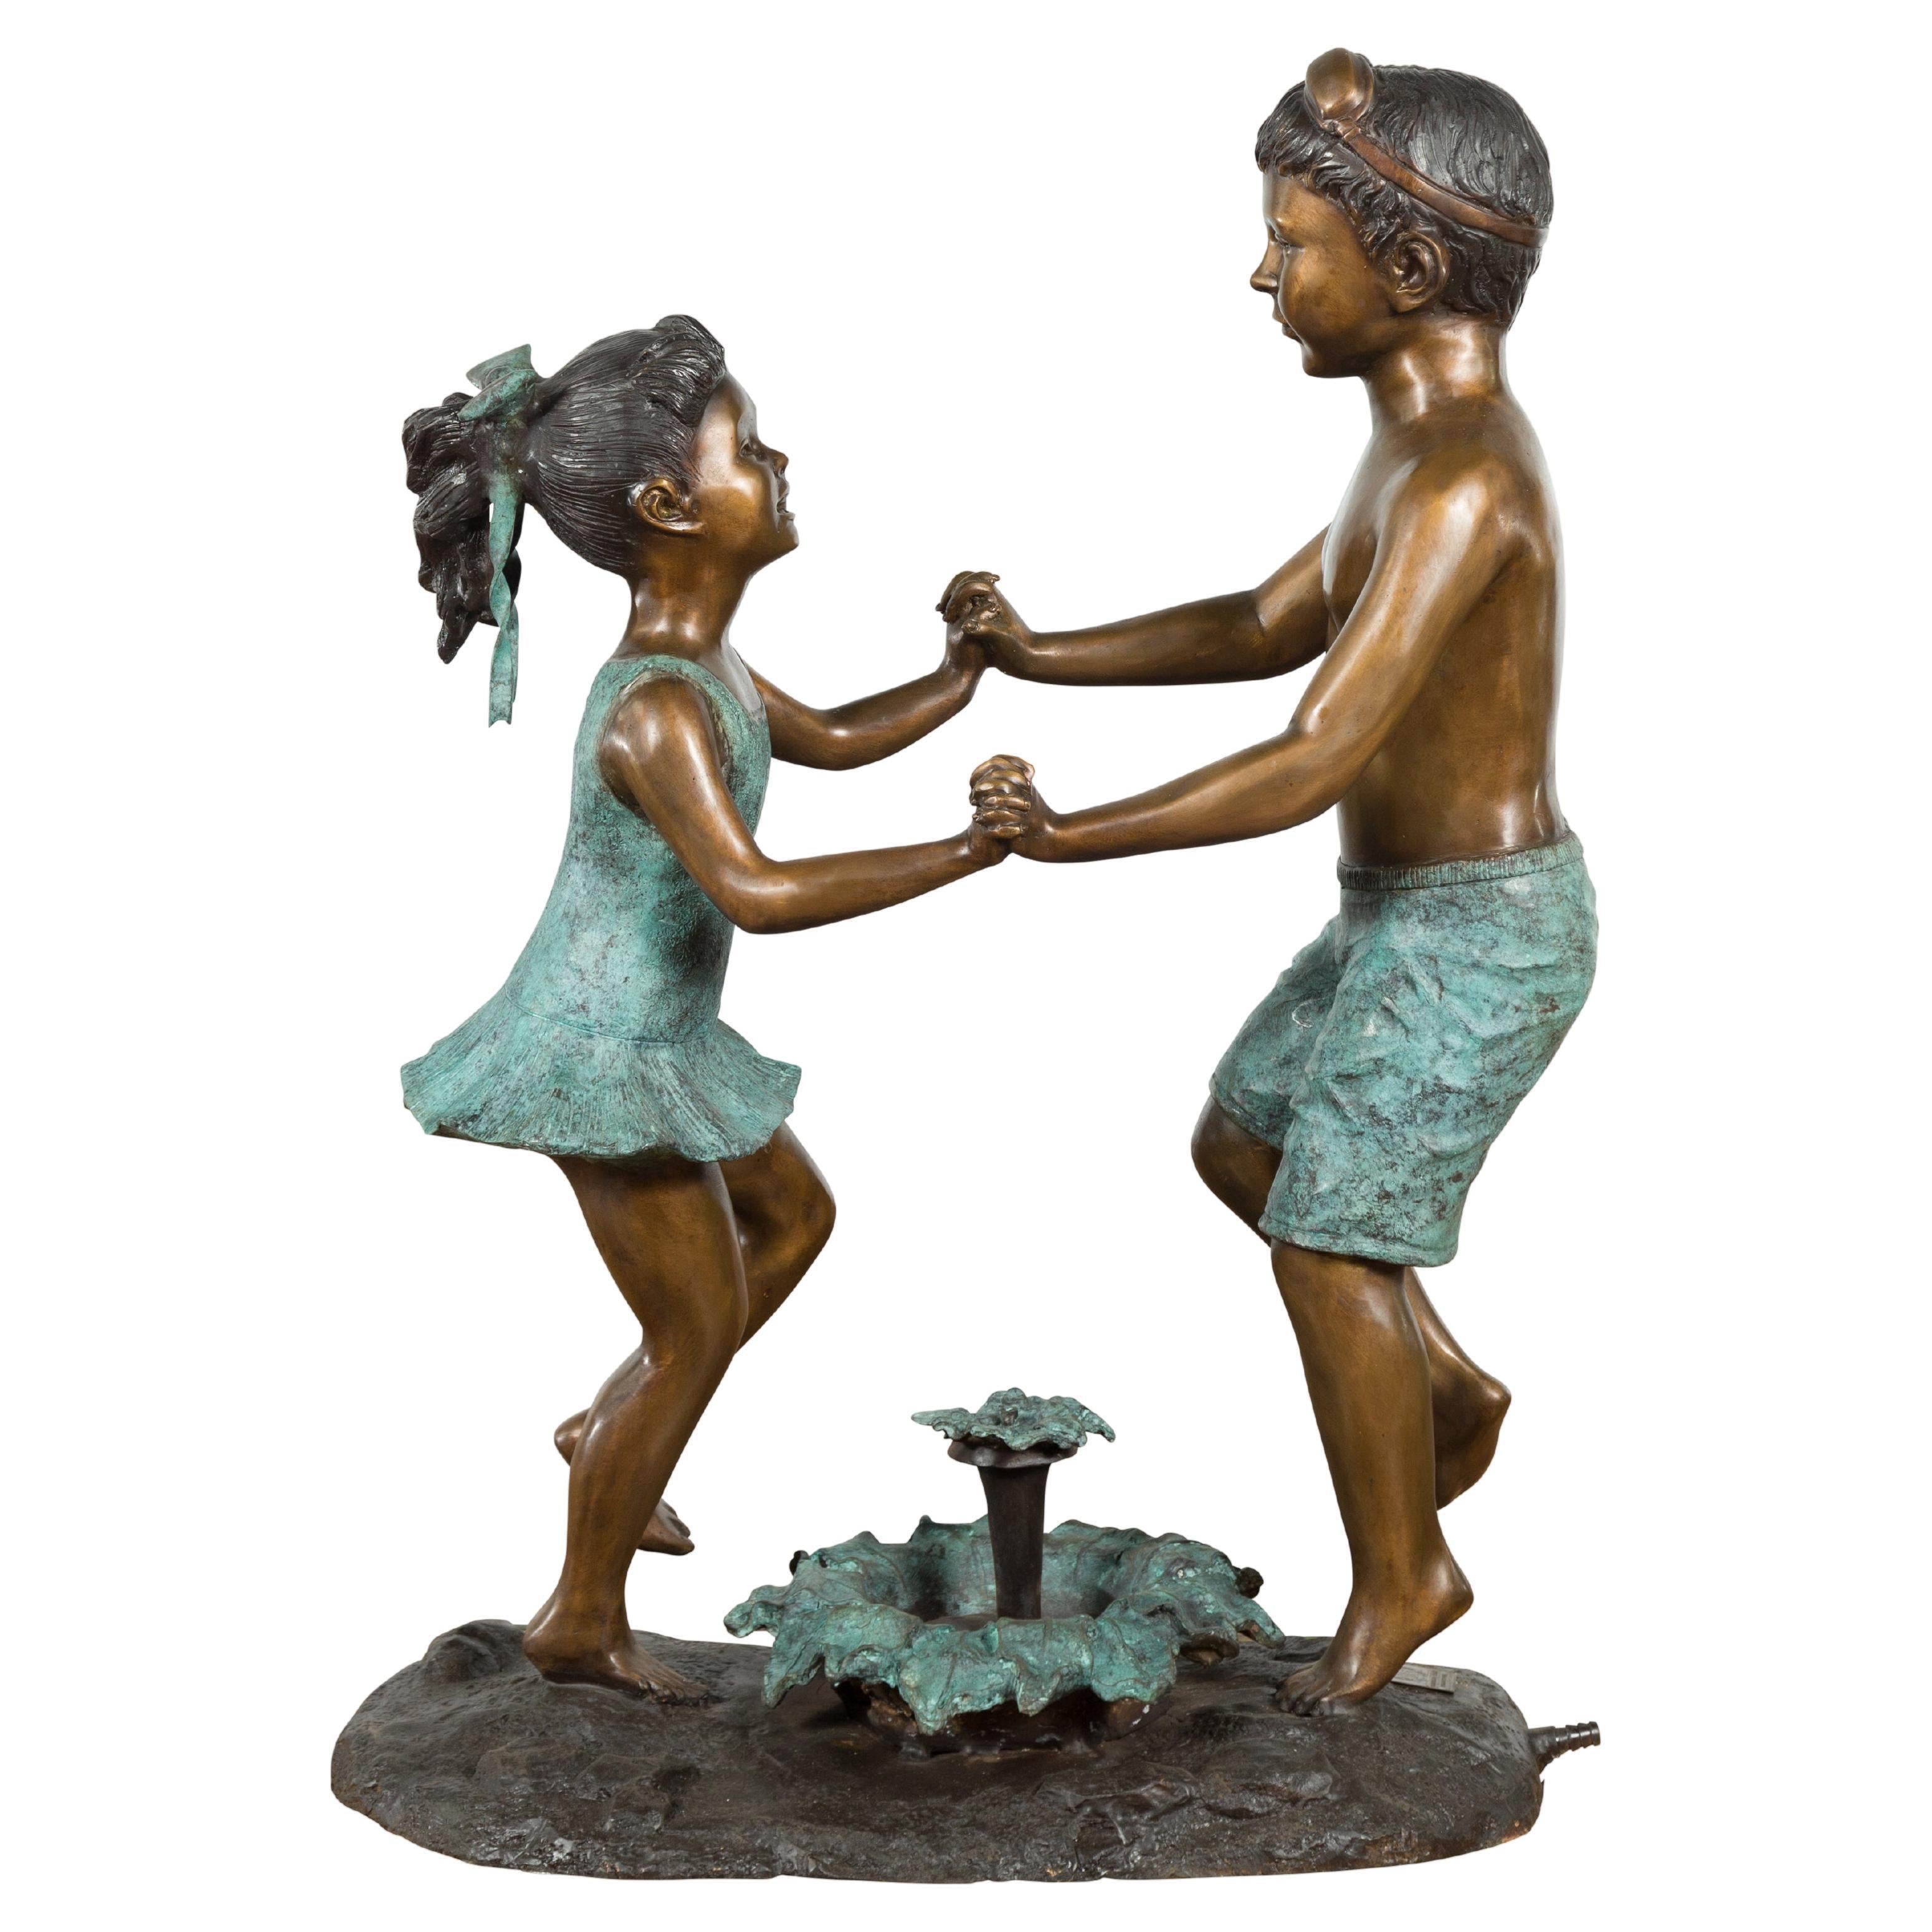 Groupe de frères et sœurs dansants en bronze sculpté moulé à la cire perdue, transformé en fontaine